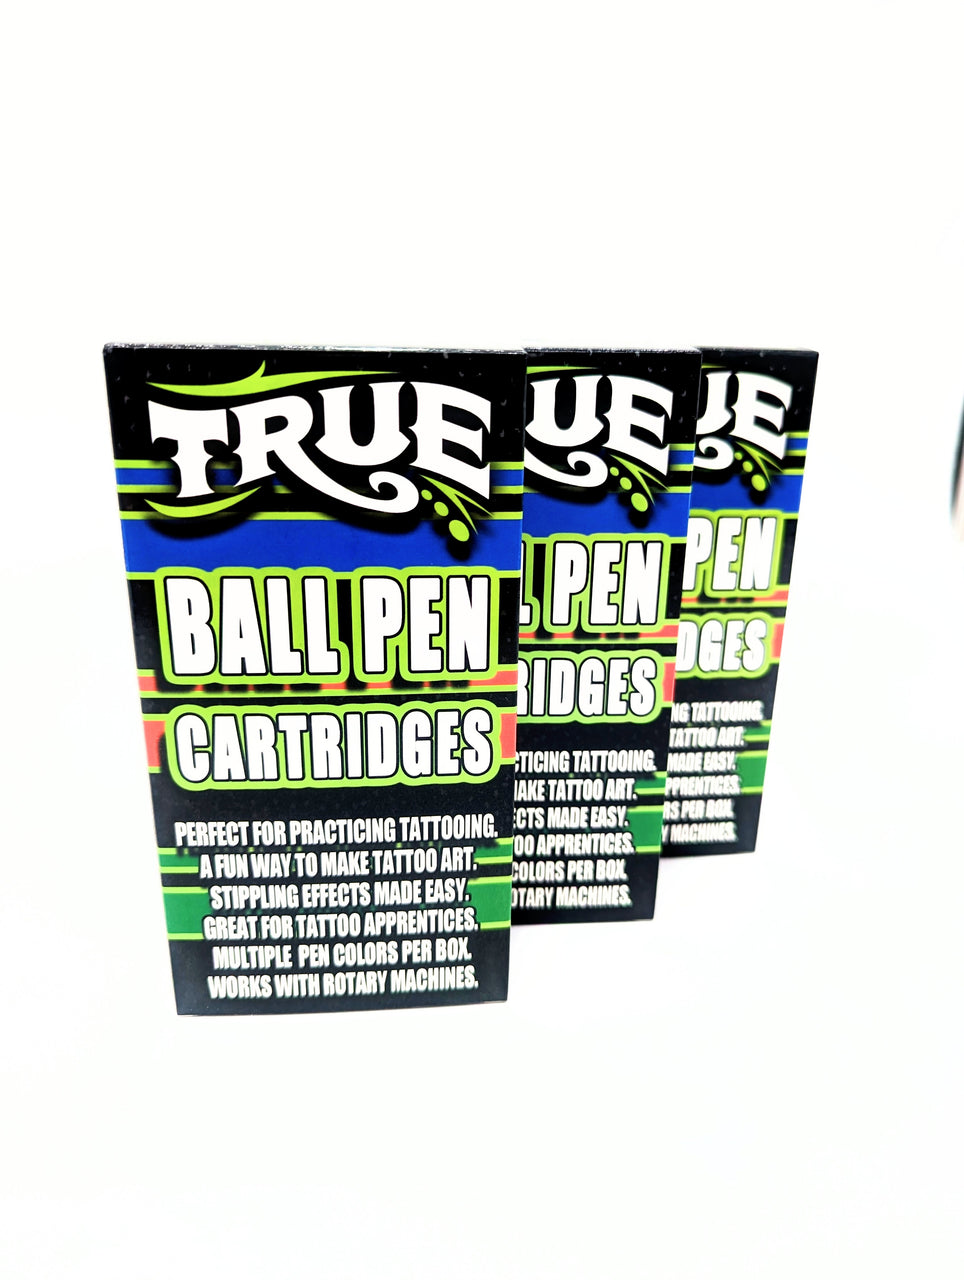 Ball Pen Cartridges